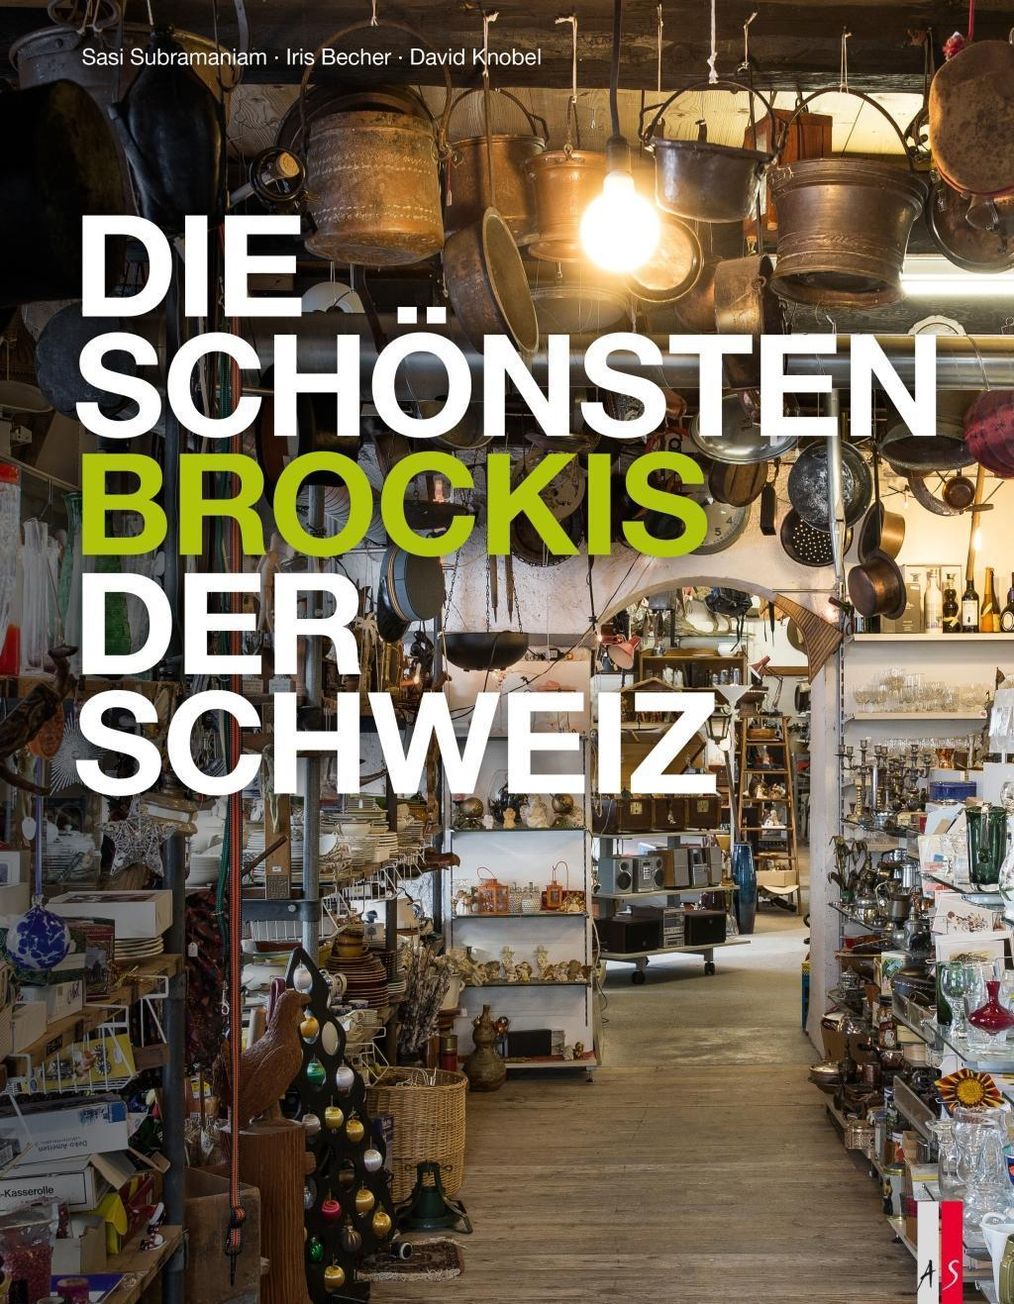 Die schönsten Brockis der Schweiz Buch versandkostenfrei bei Weltbild.de